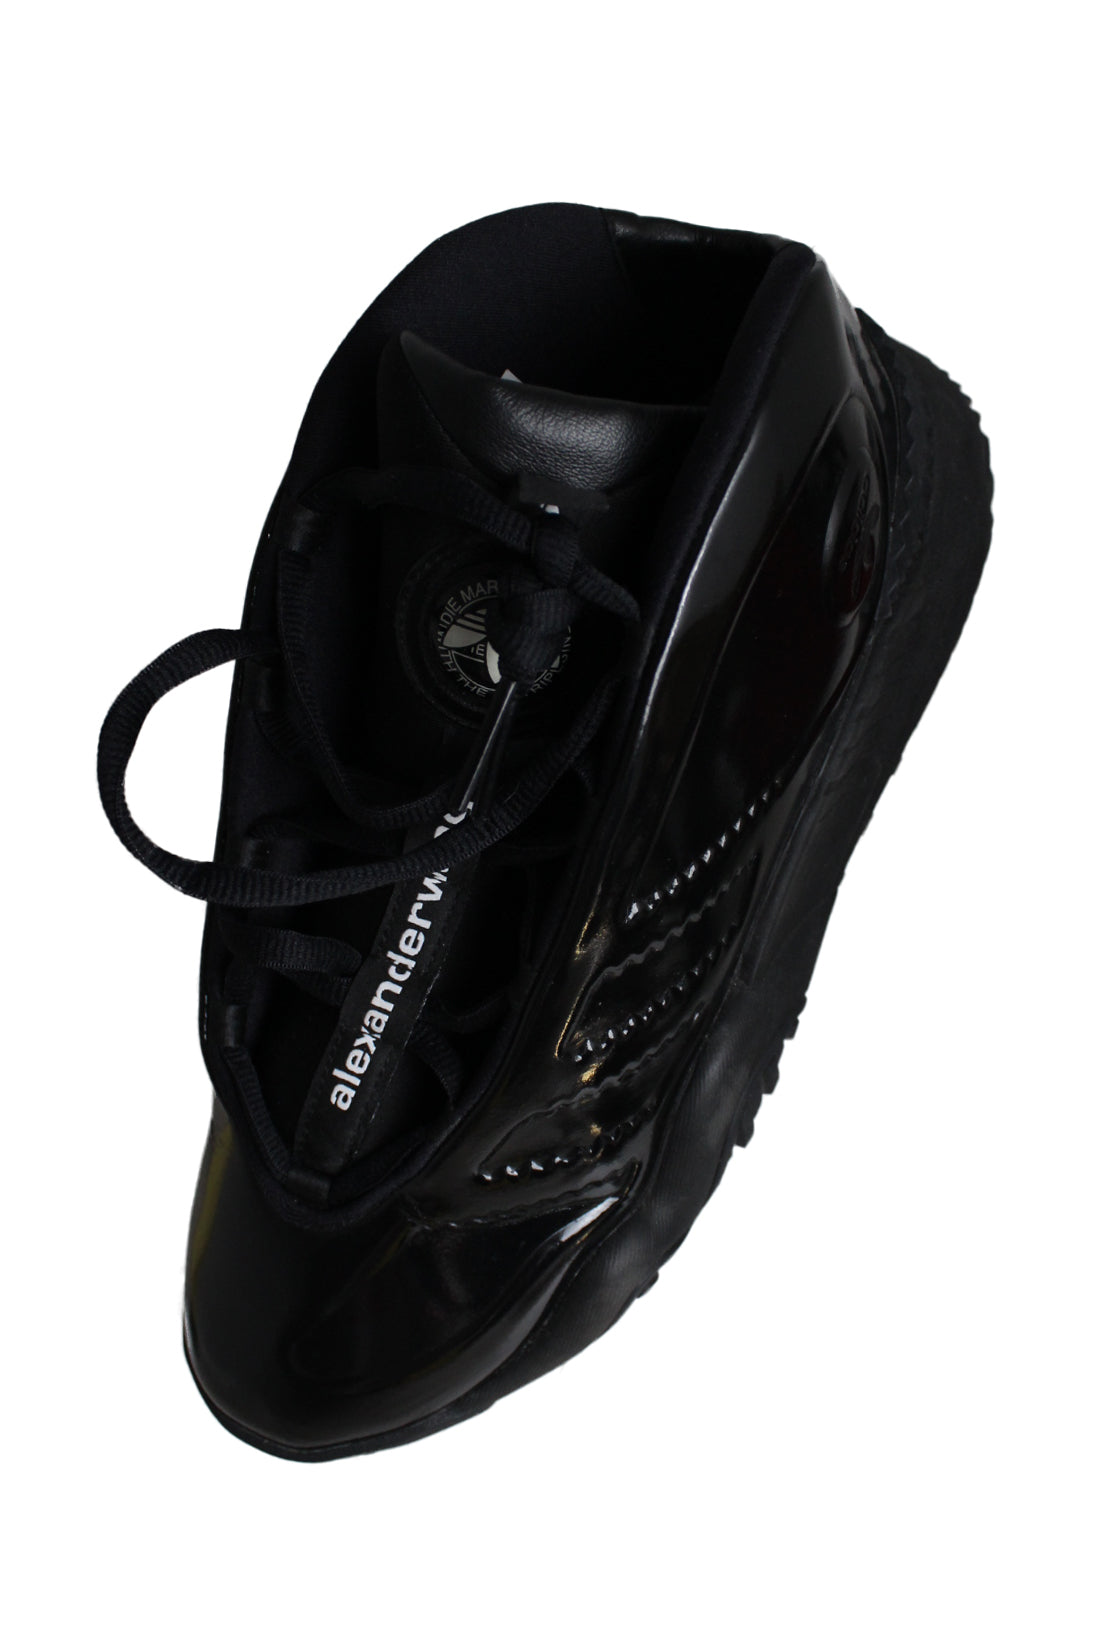 top side view with 'adidas' logo tag at tongue, 'alexander wang' lace tag at tongue of shoes.